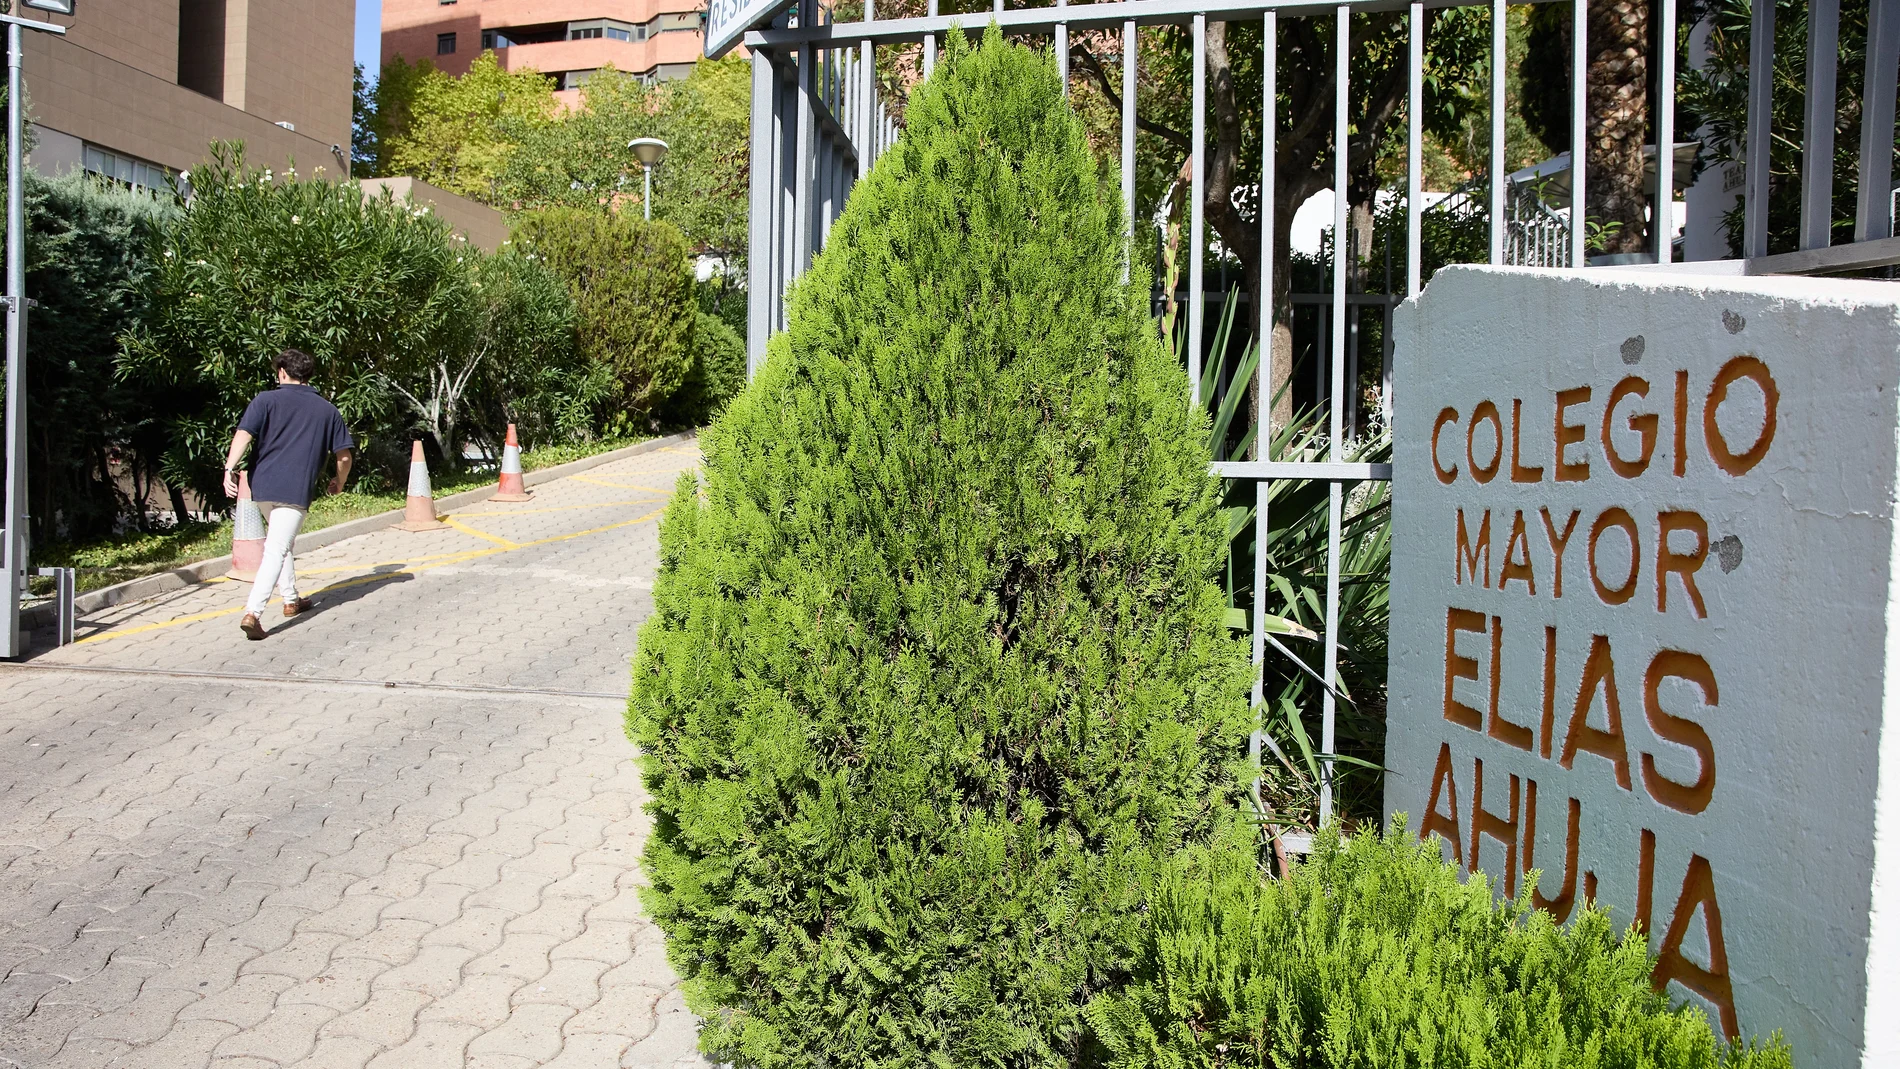 Entrada del Colegio Mayor Elías Ahúja en Madrid